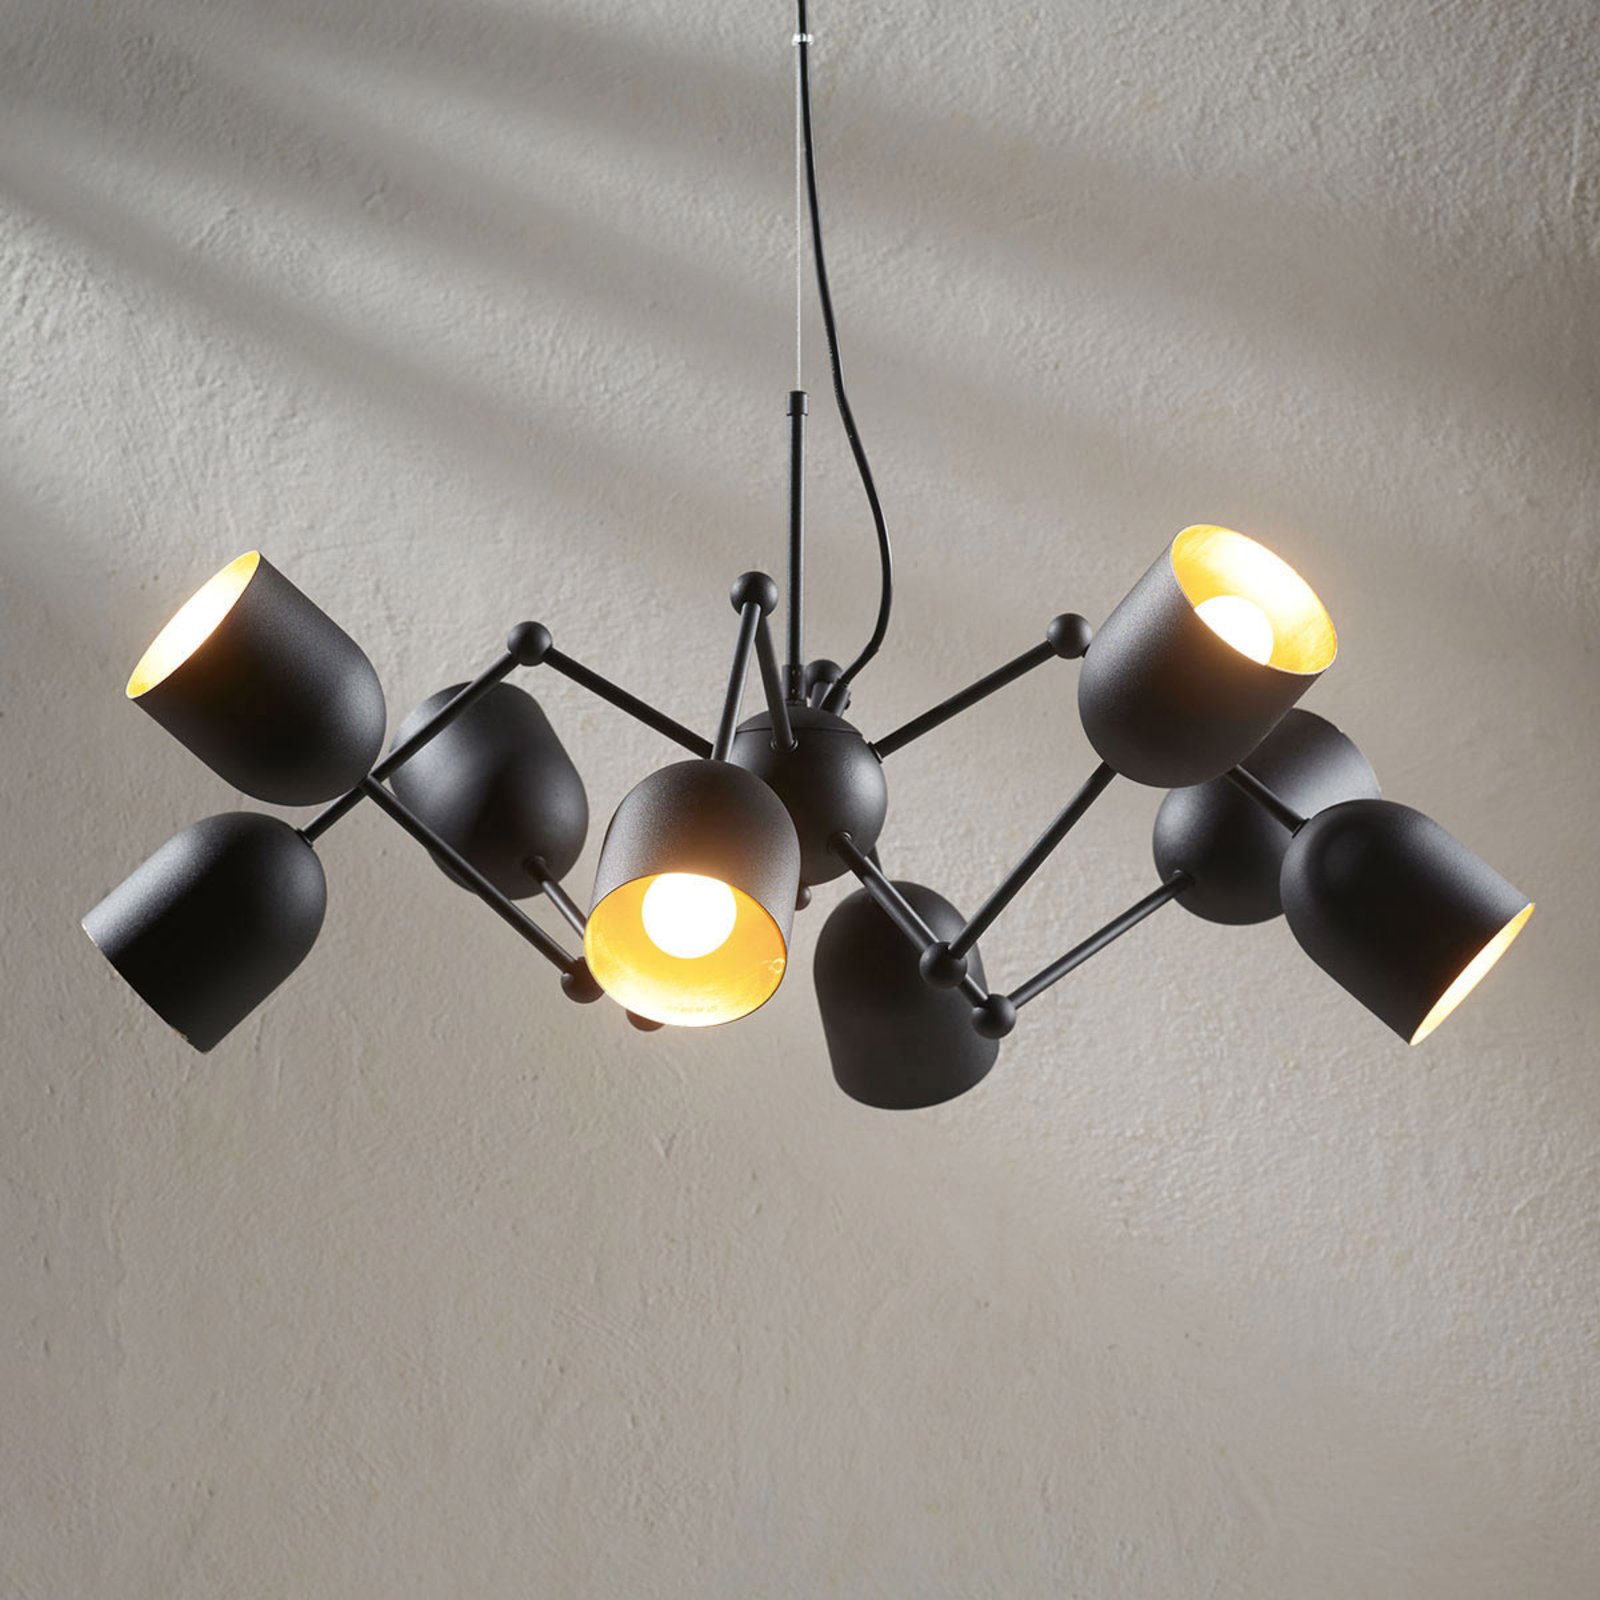 8.lamps LED hanglamp Morik, easydim